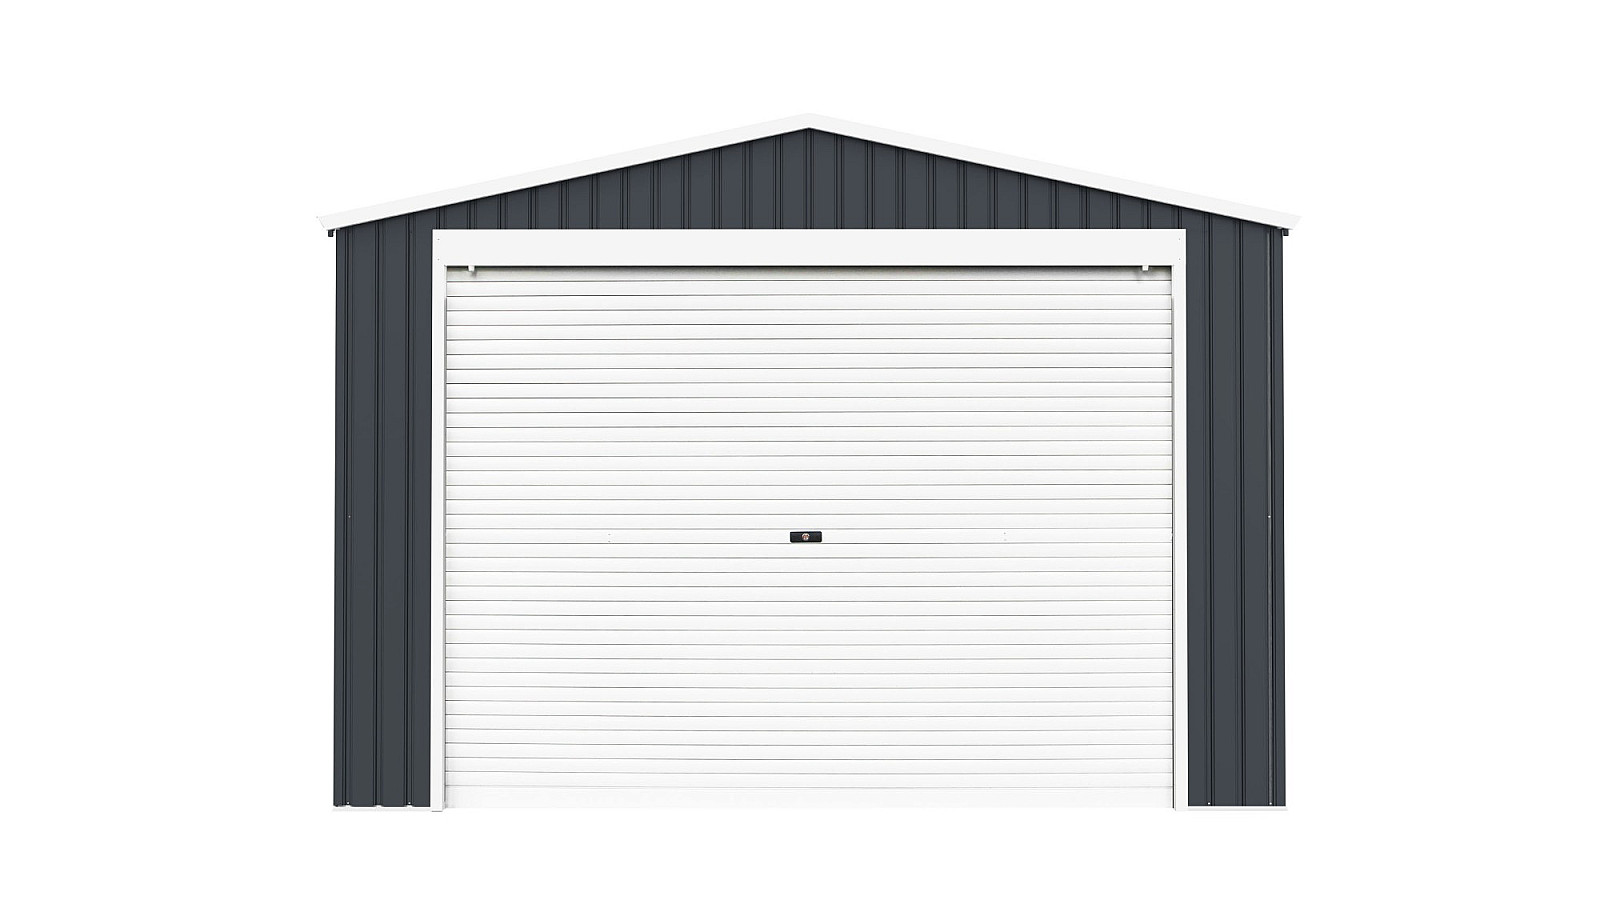 G21 Plechová garáž G21 Portland 1500 - 338 x 448 cm (antracit)